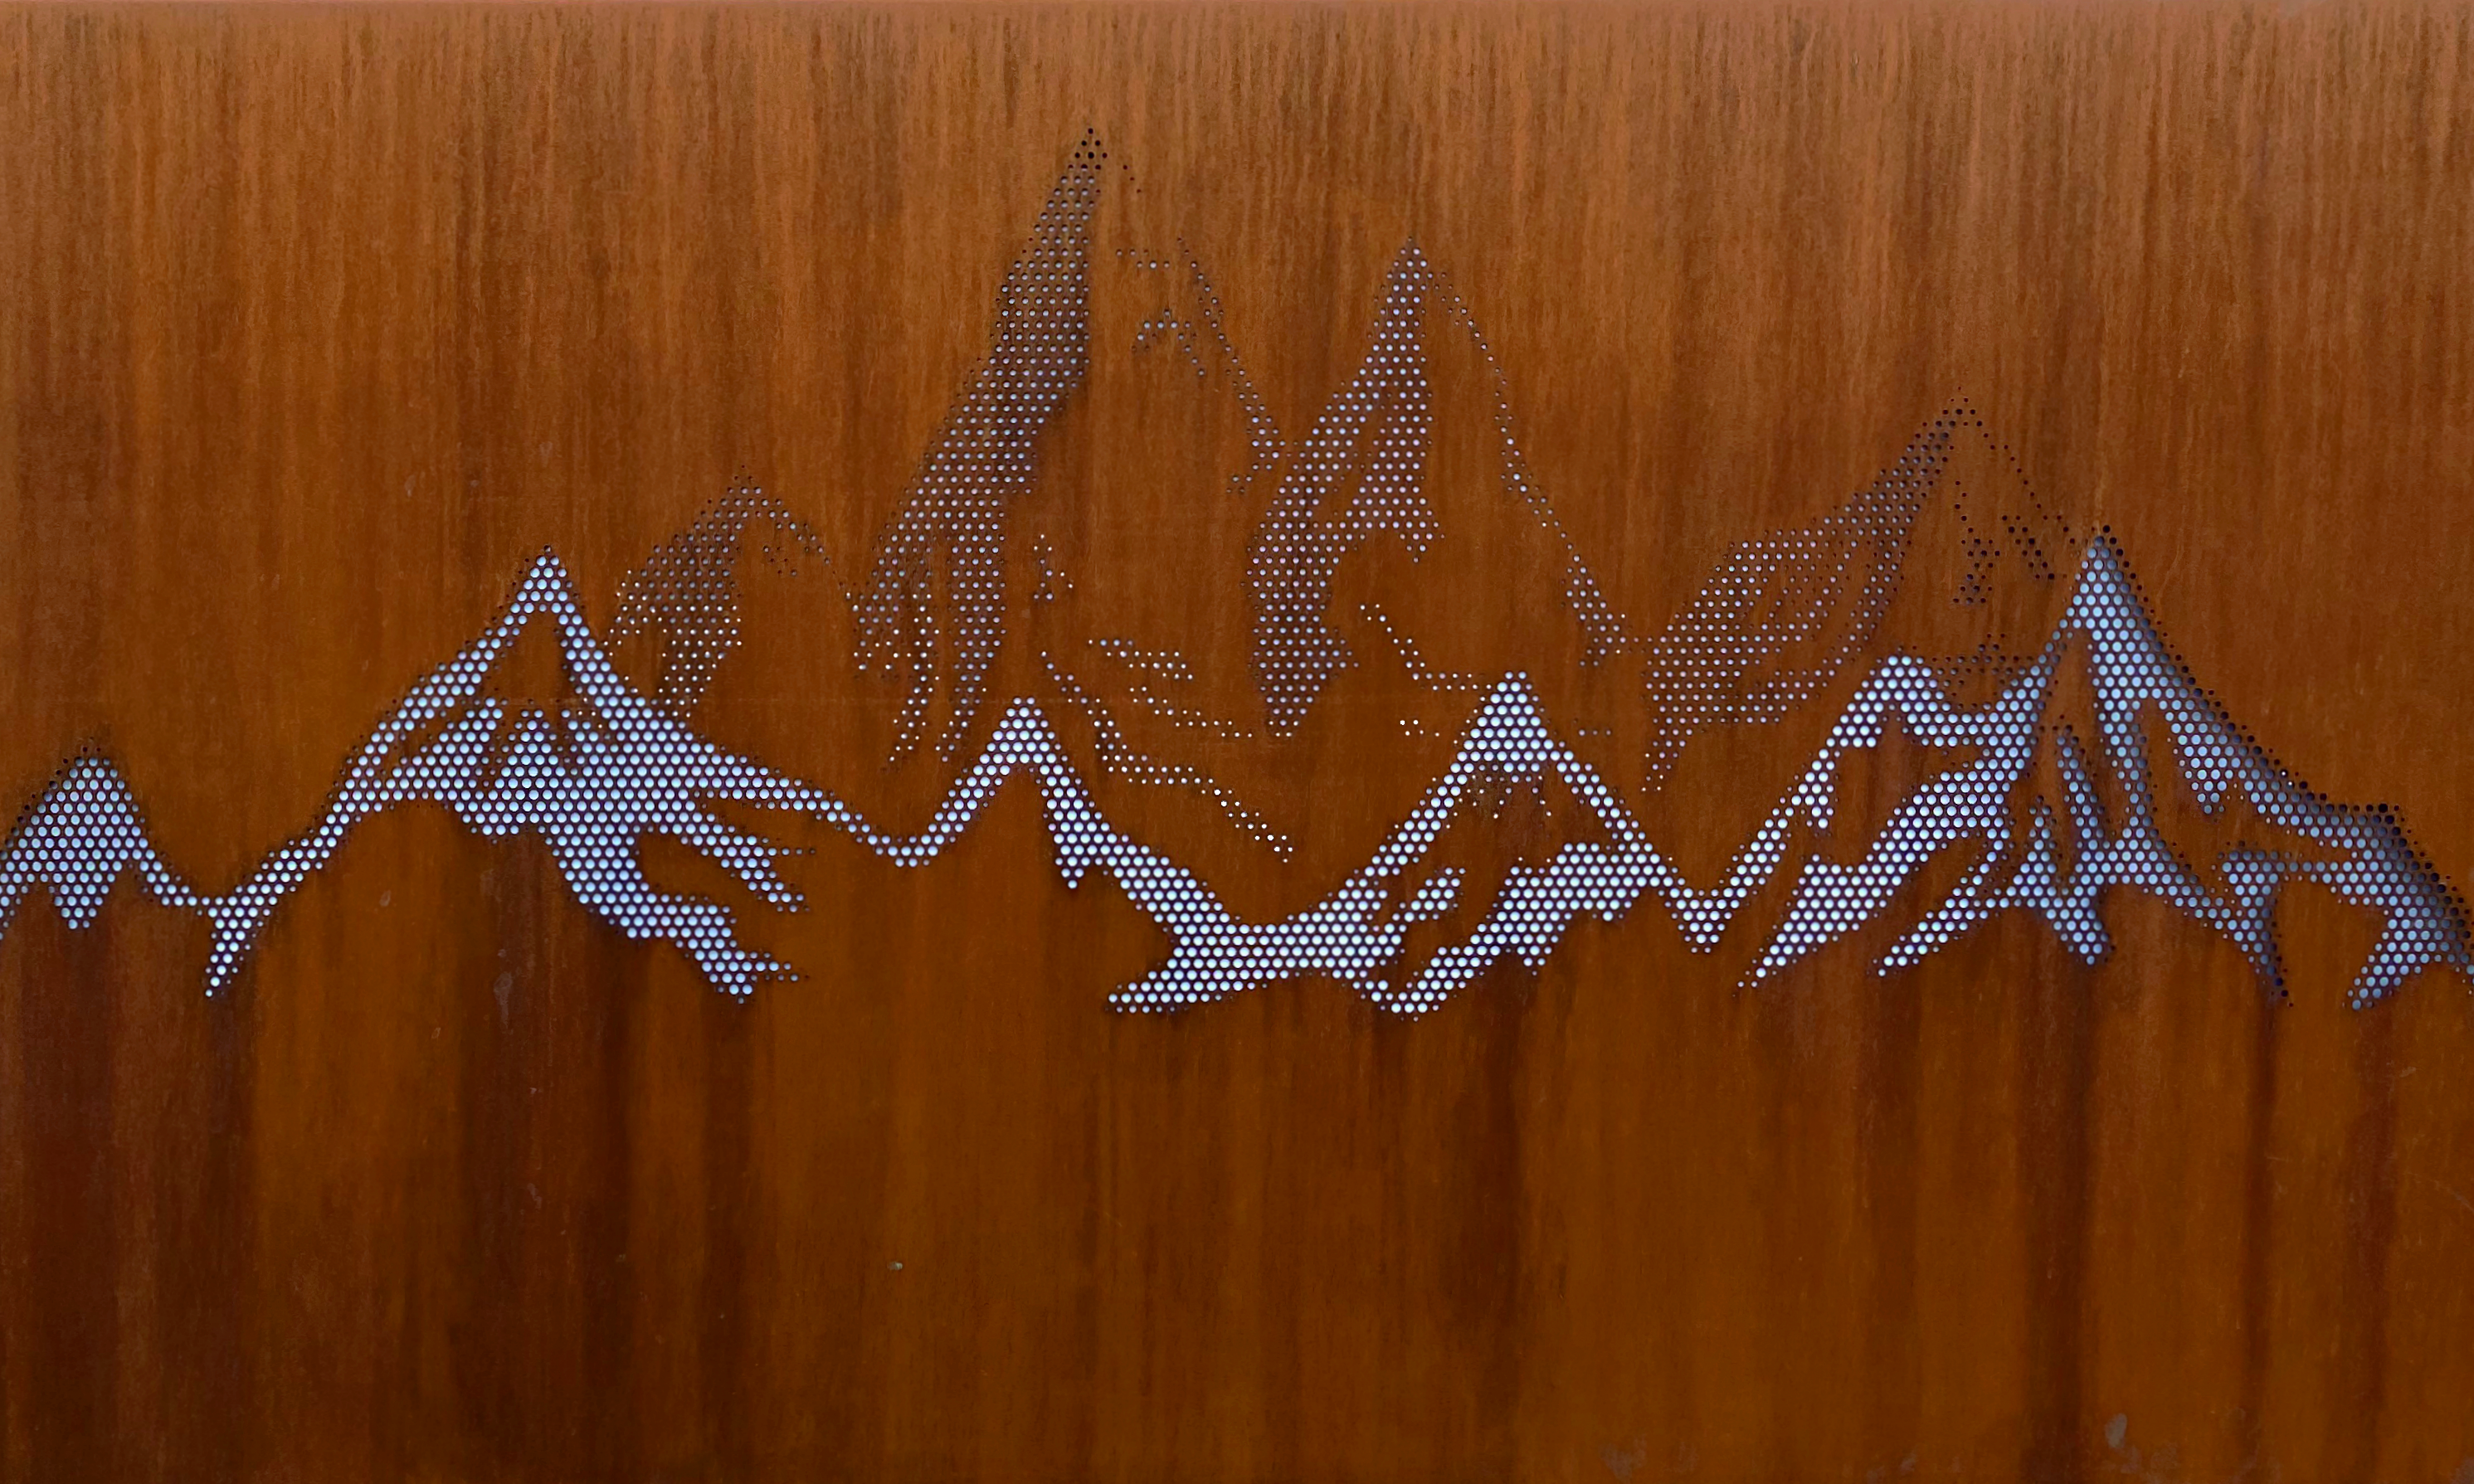 Motiv Berge in Sichtschutzwand, mit Lochraster erstellt